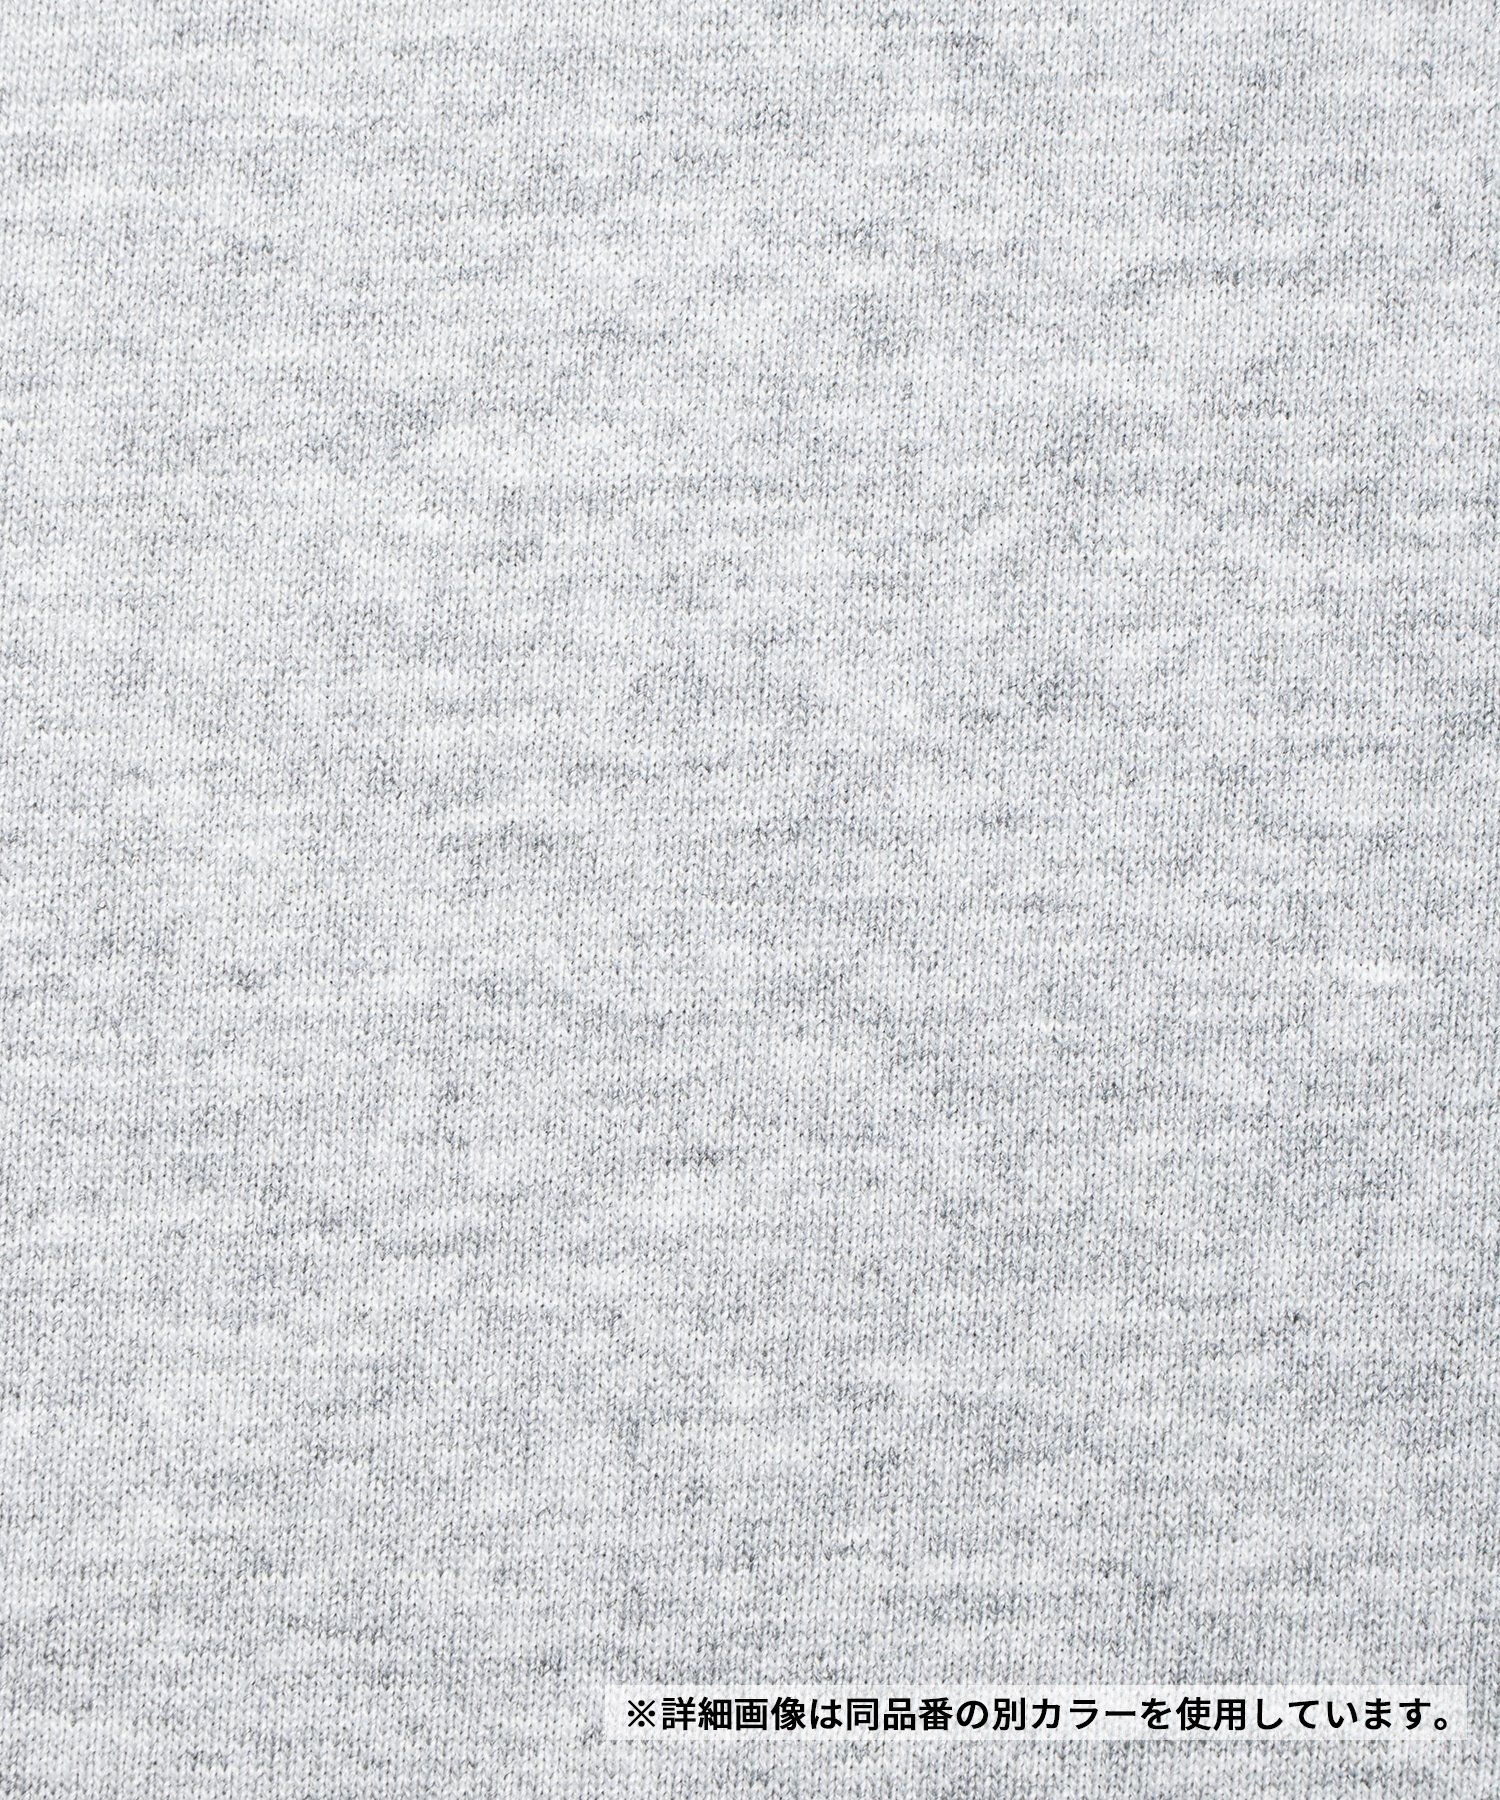 THE NORTH FACE ザ・ノース・フェイス メンズ Tシャツ 半袖 ショートスリーブナチュラルフェノメノンティー NT32459 W(W-M)